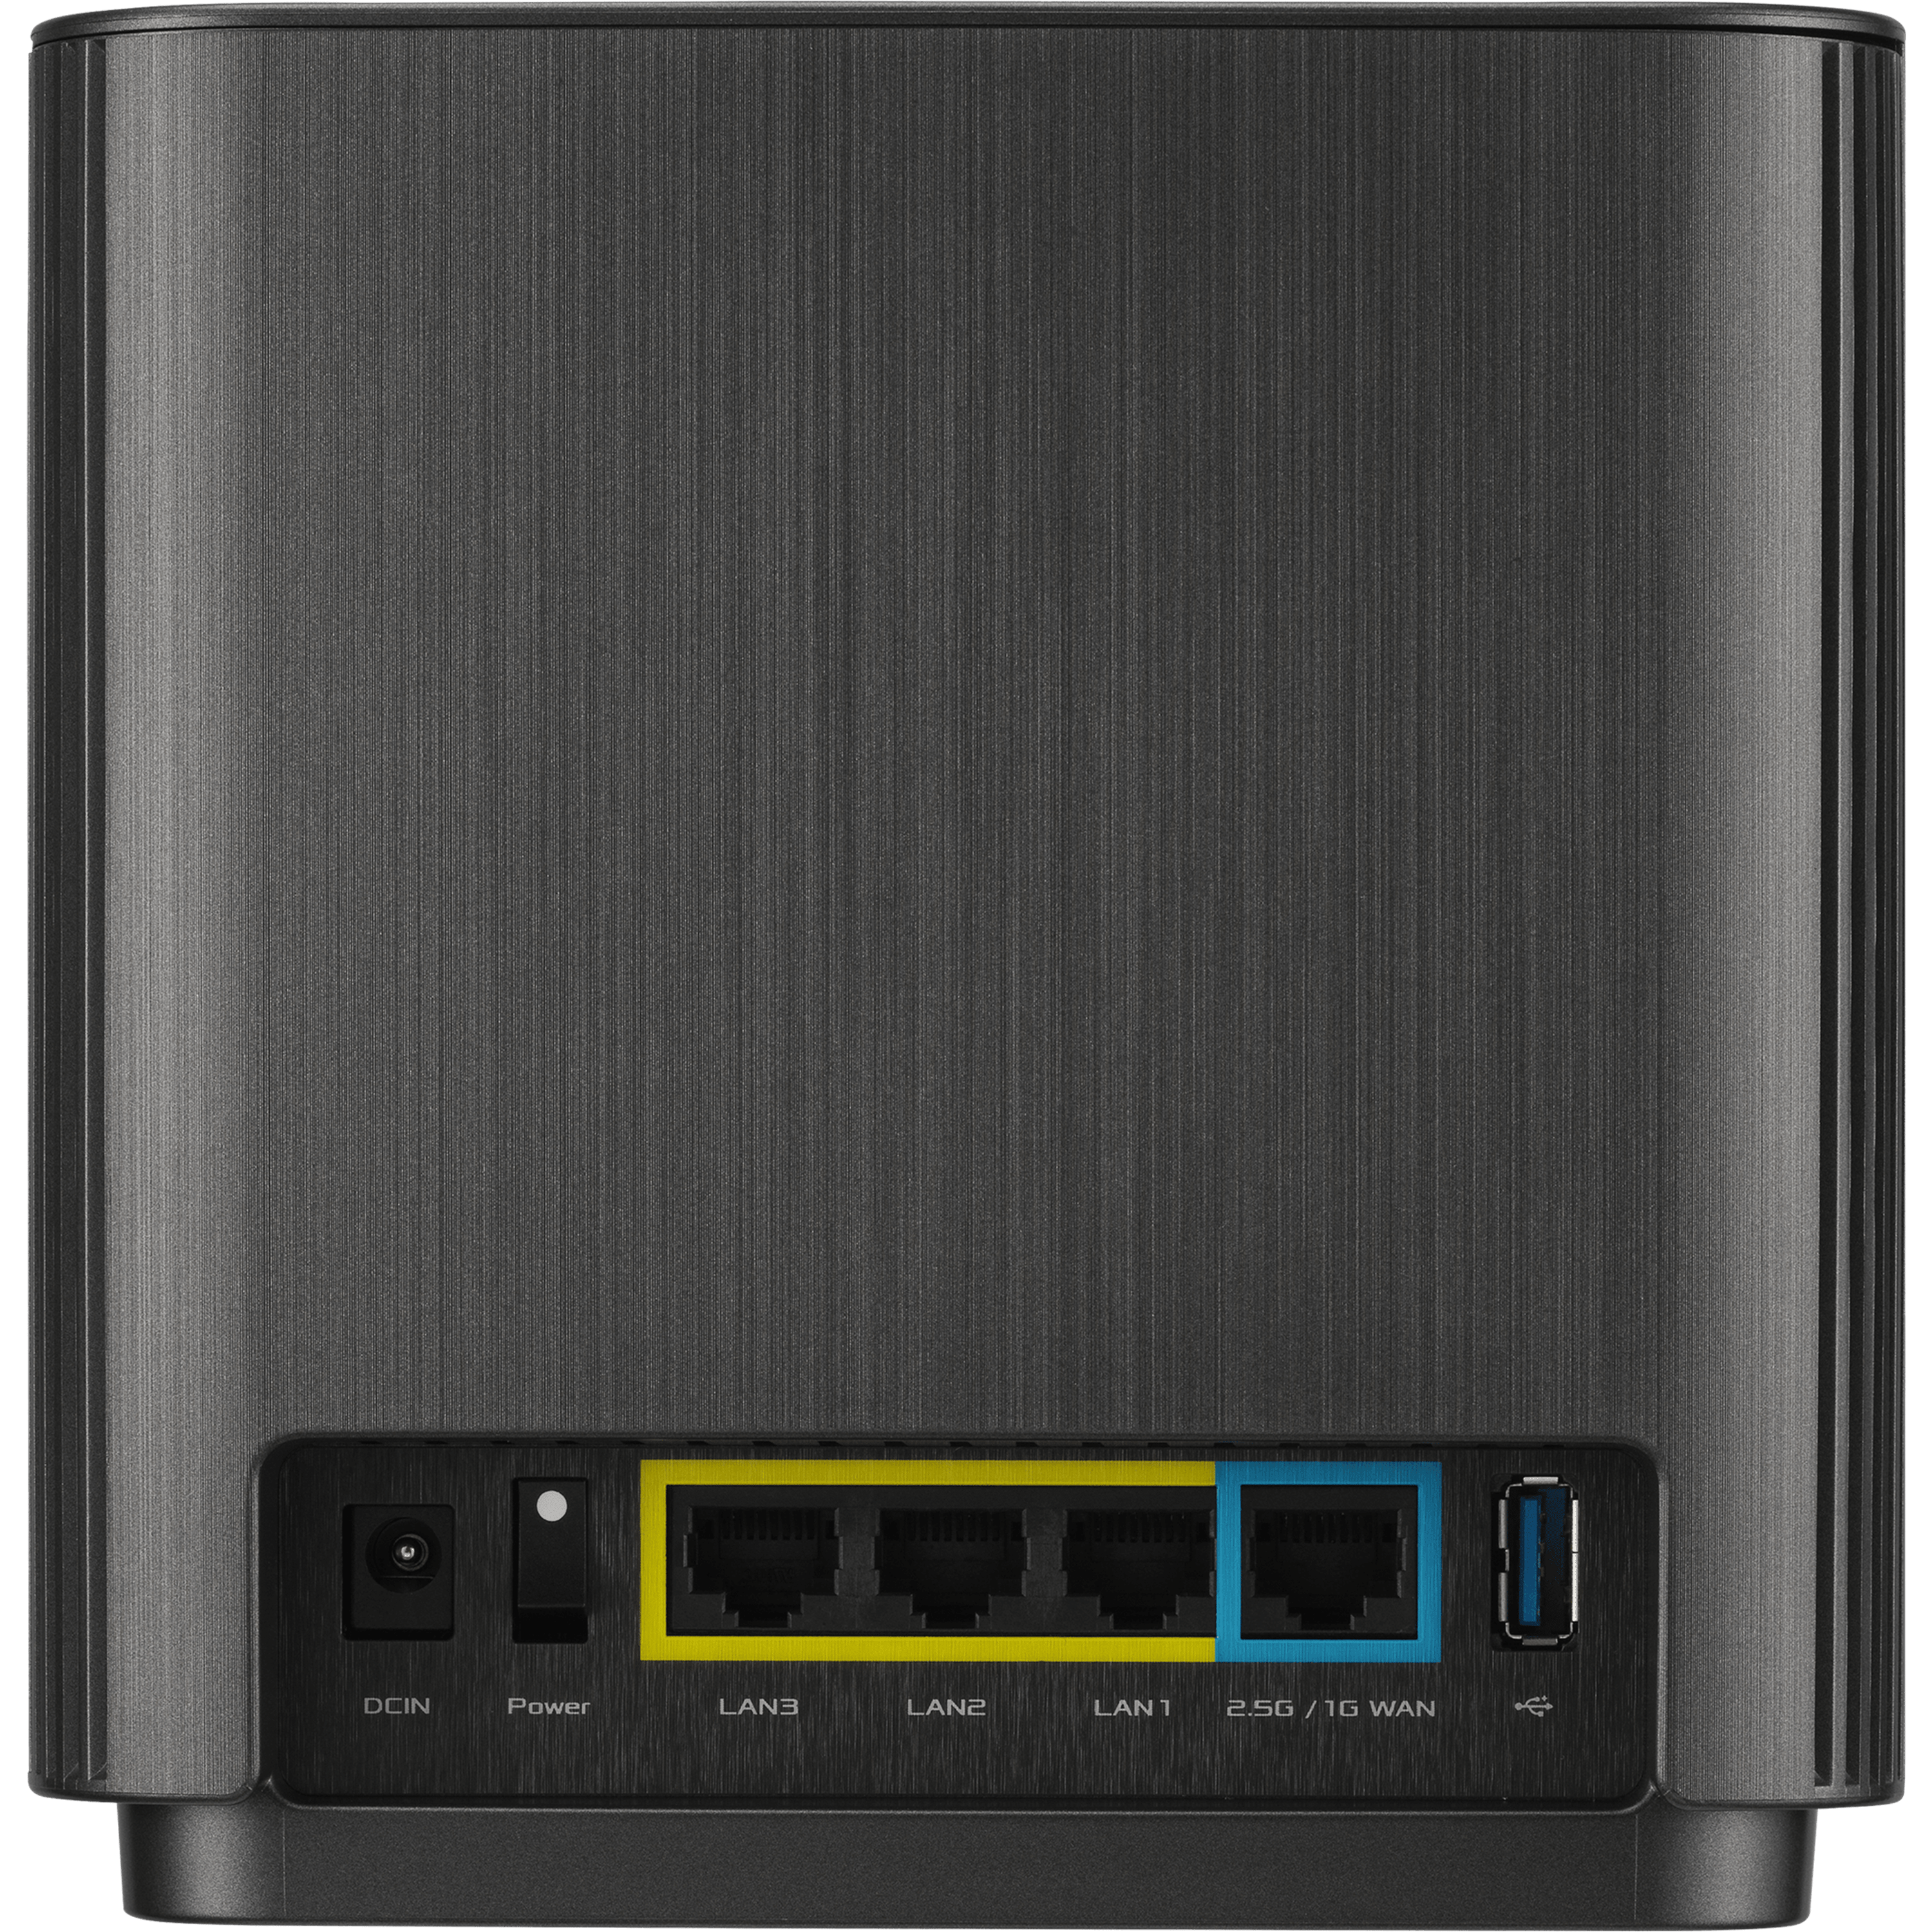 ראוטר אלחוטי Asus ZenWiFi XT9 AX7800 WiFi 6 שתי יחידות - צבע שחור שלוש שנות אחריות ע